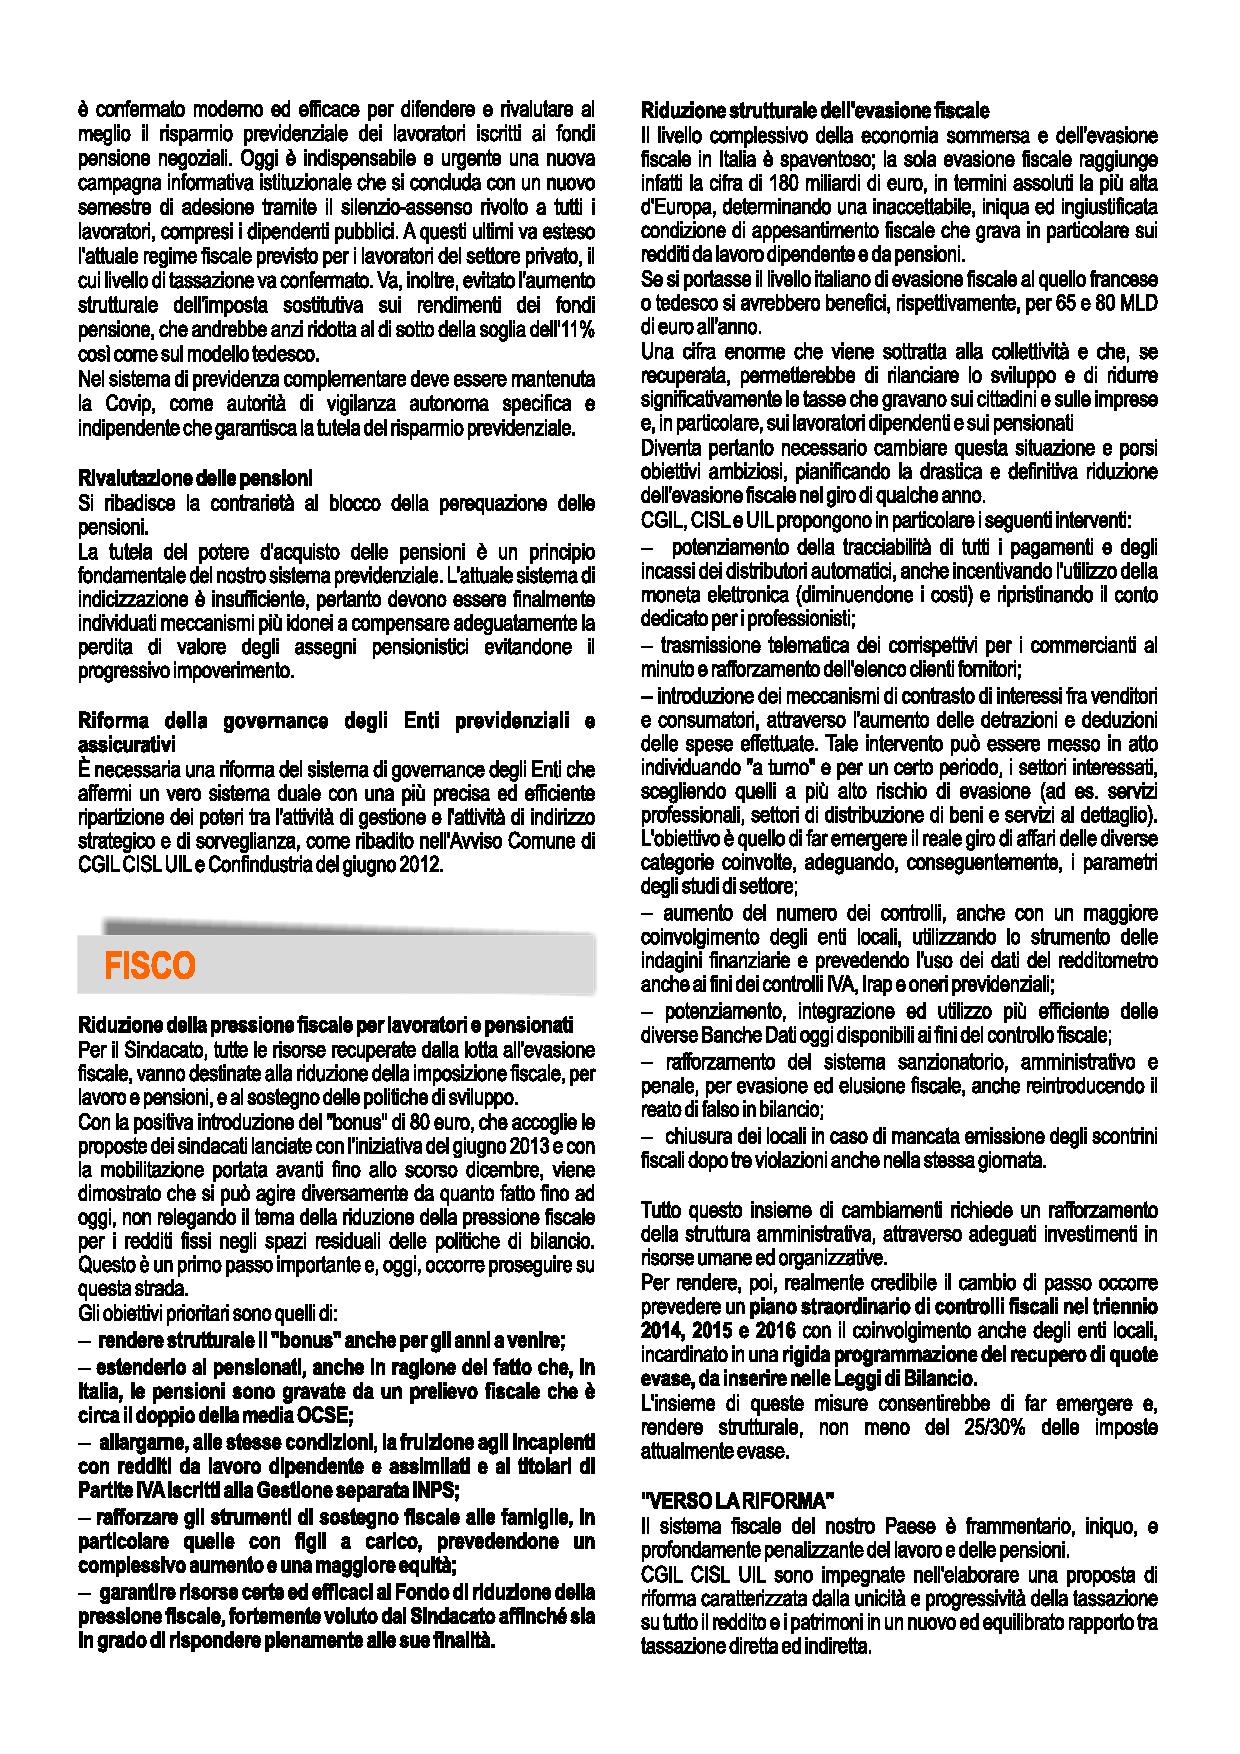 Volantino_piattaforma_unitaria_A4-page-002